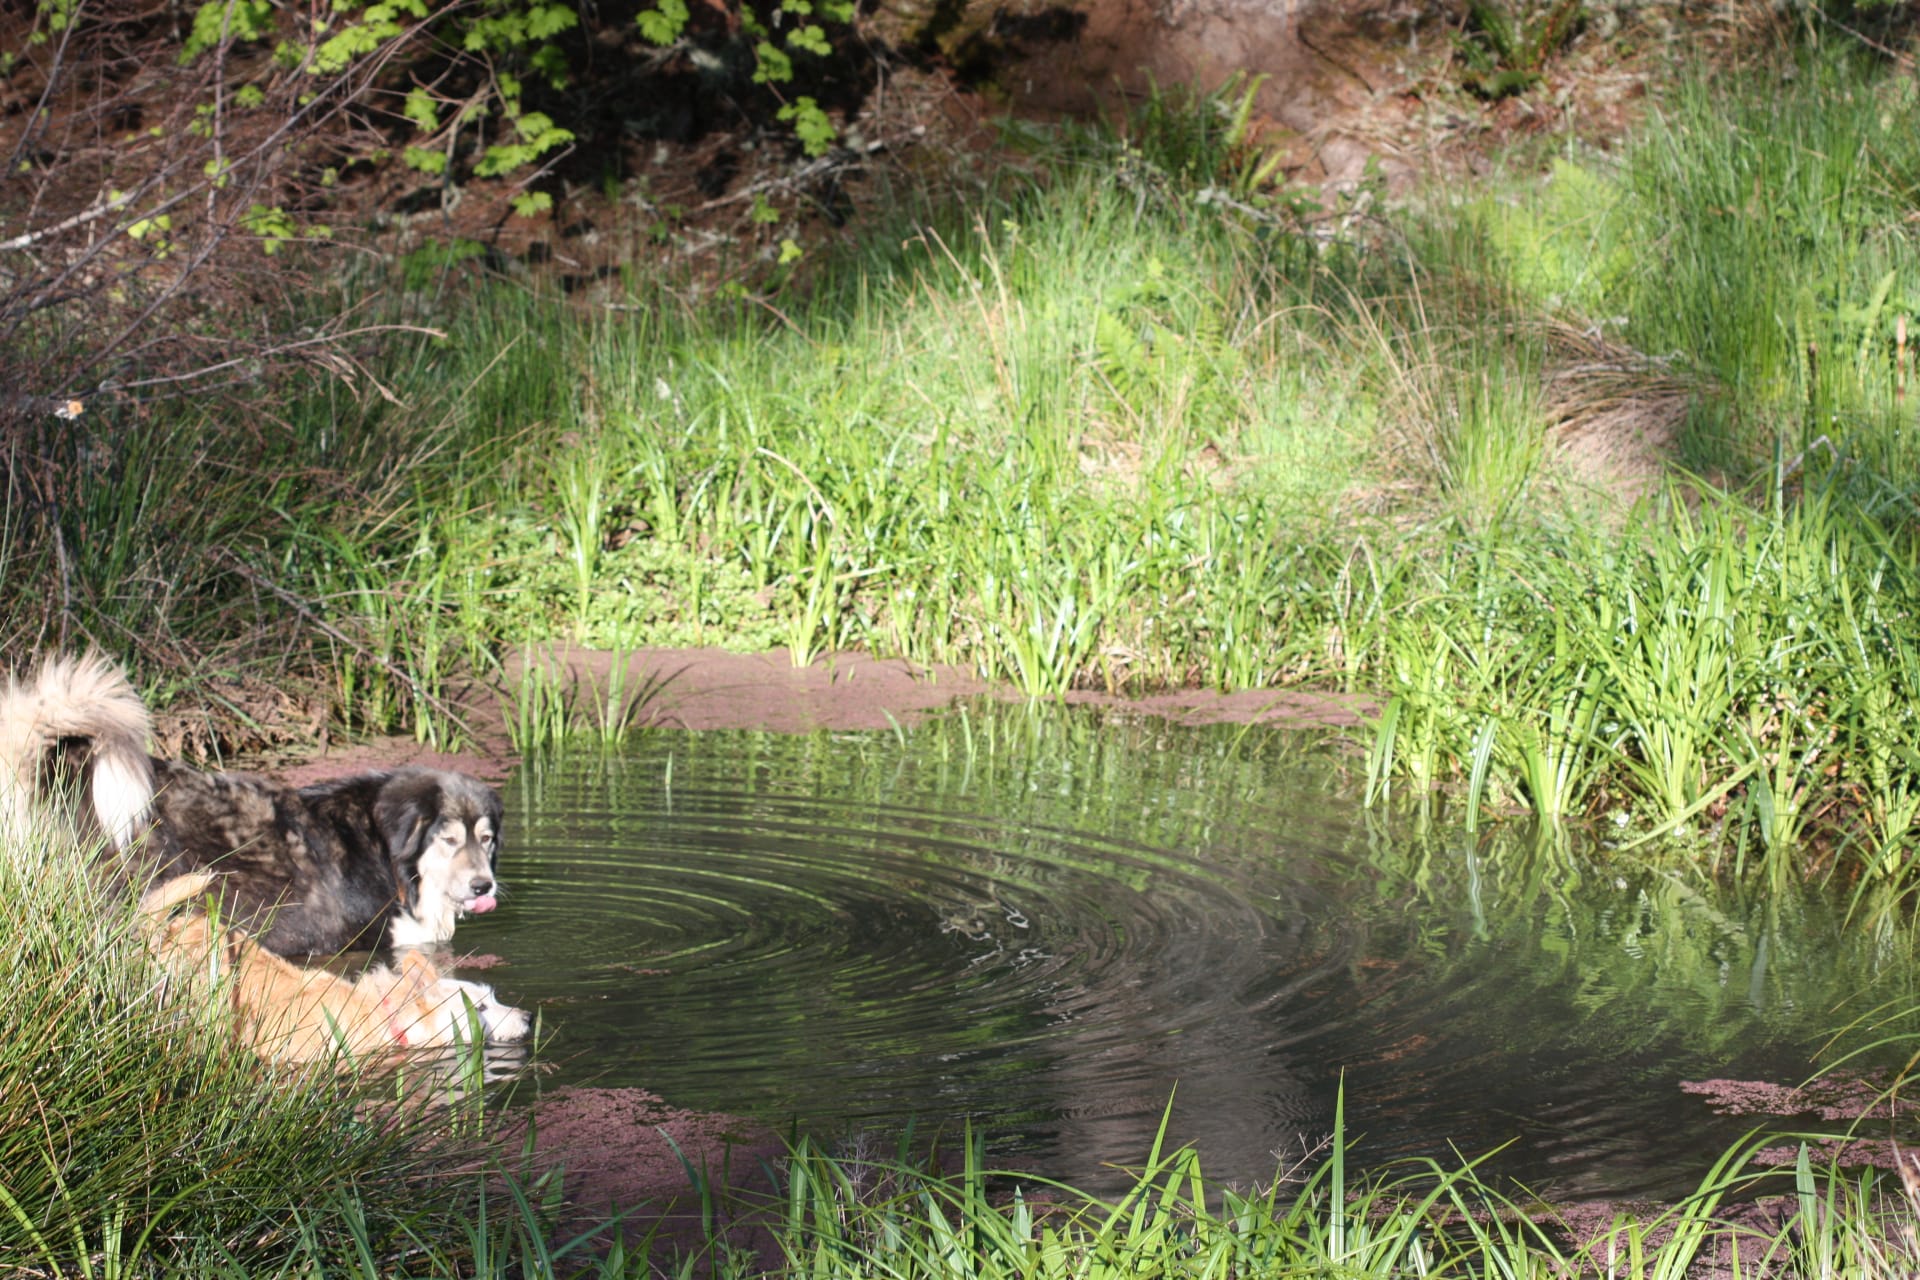 Yeti the guardian dog taking a refreshing dip.